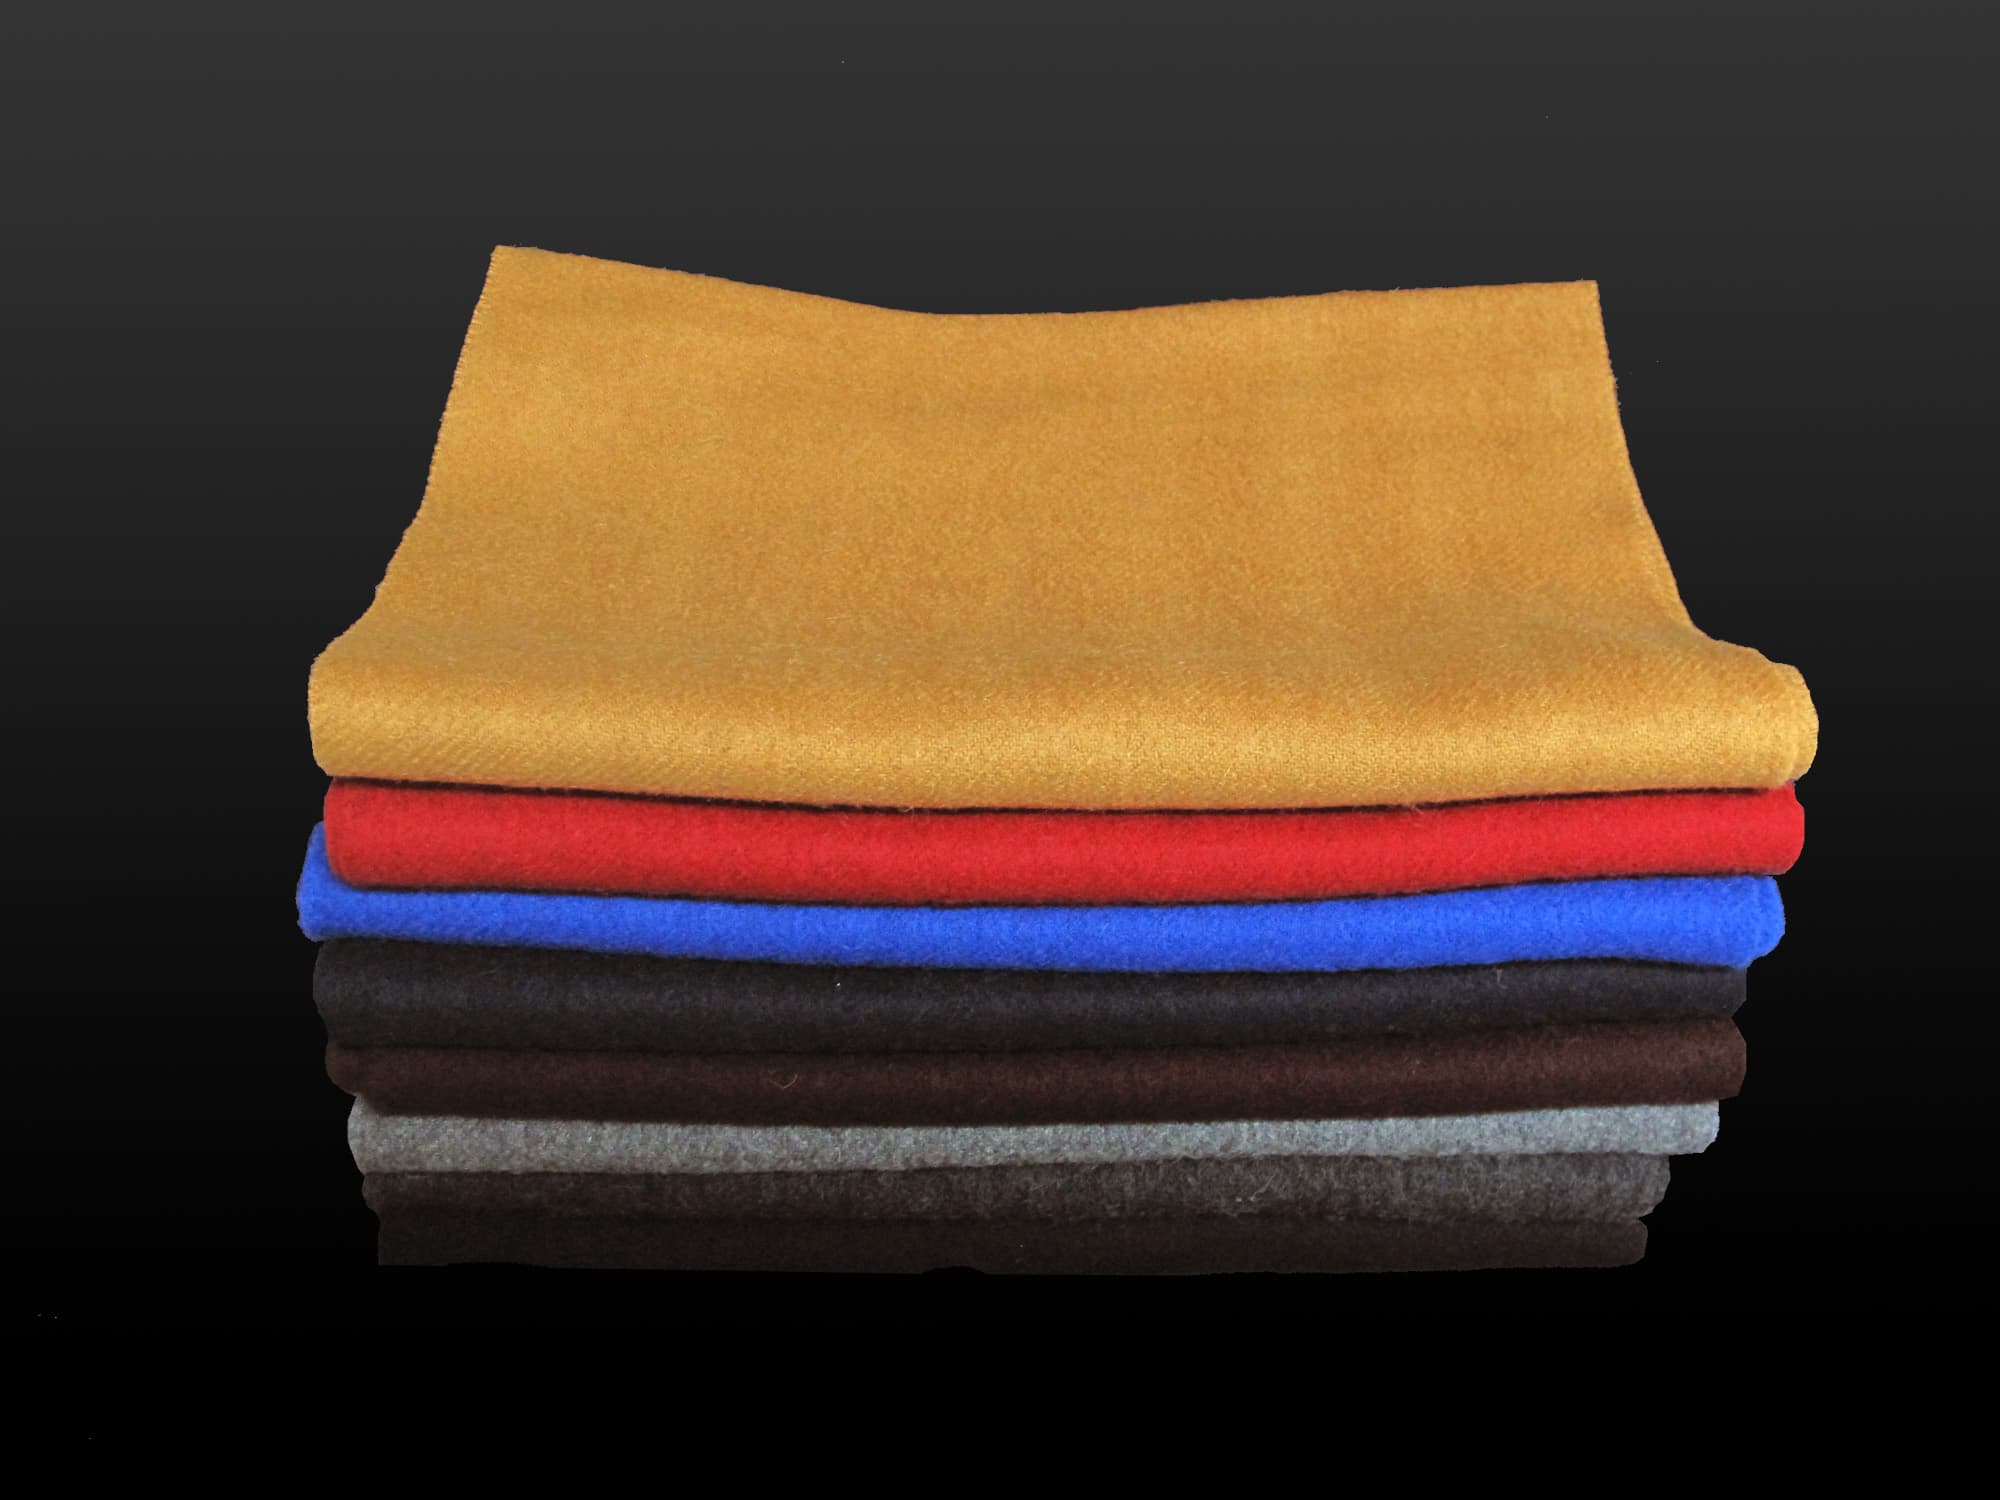 Wool Mufflers in Various Solid Colors